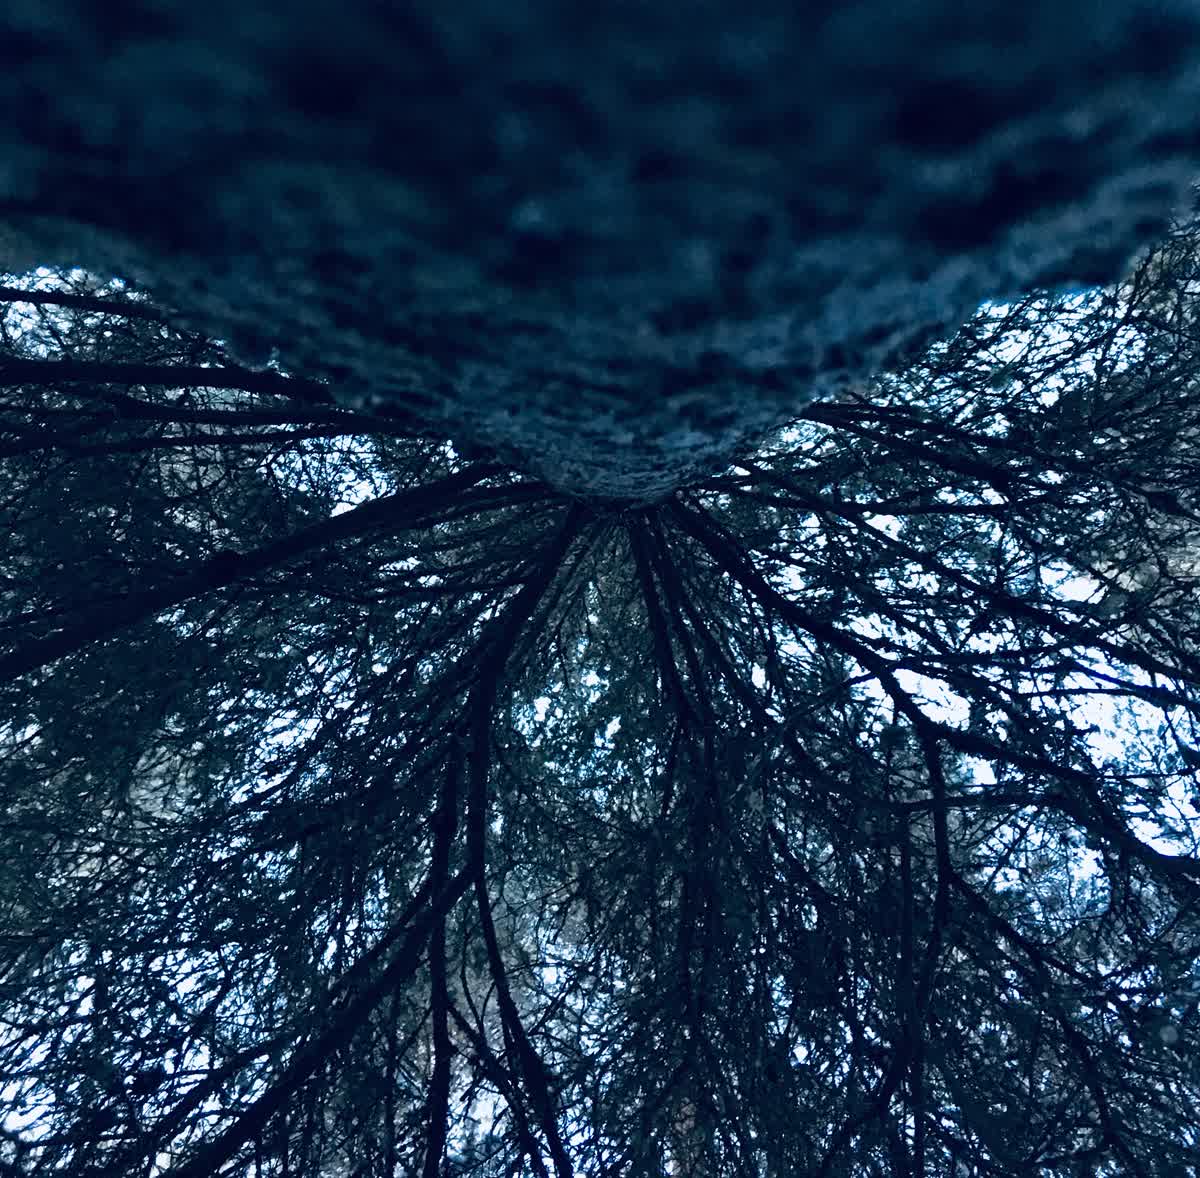 En talls grenverk fotograferat nedifrån.